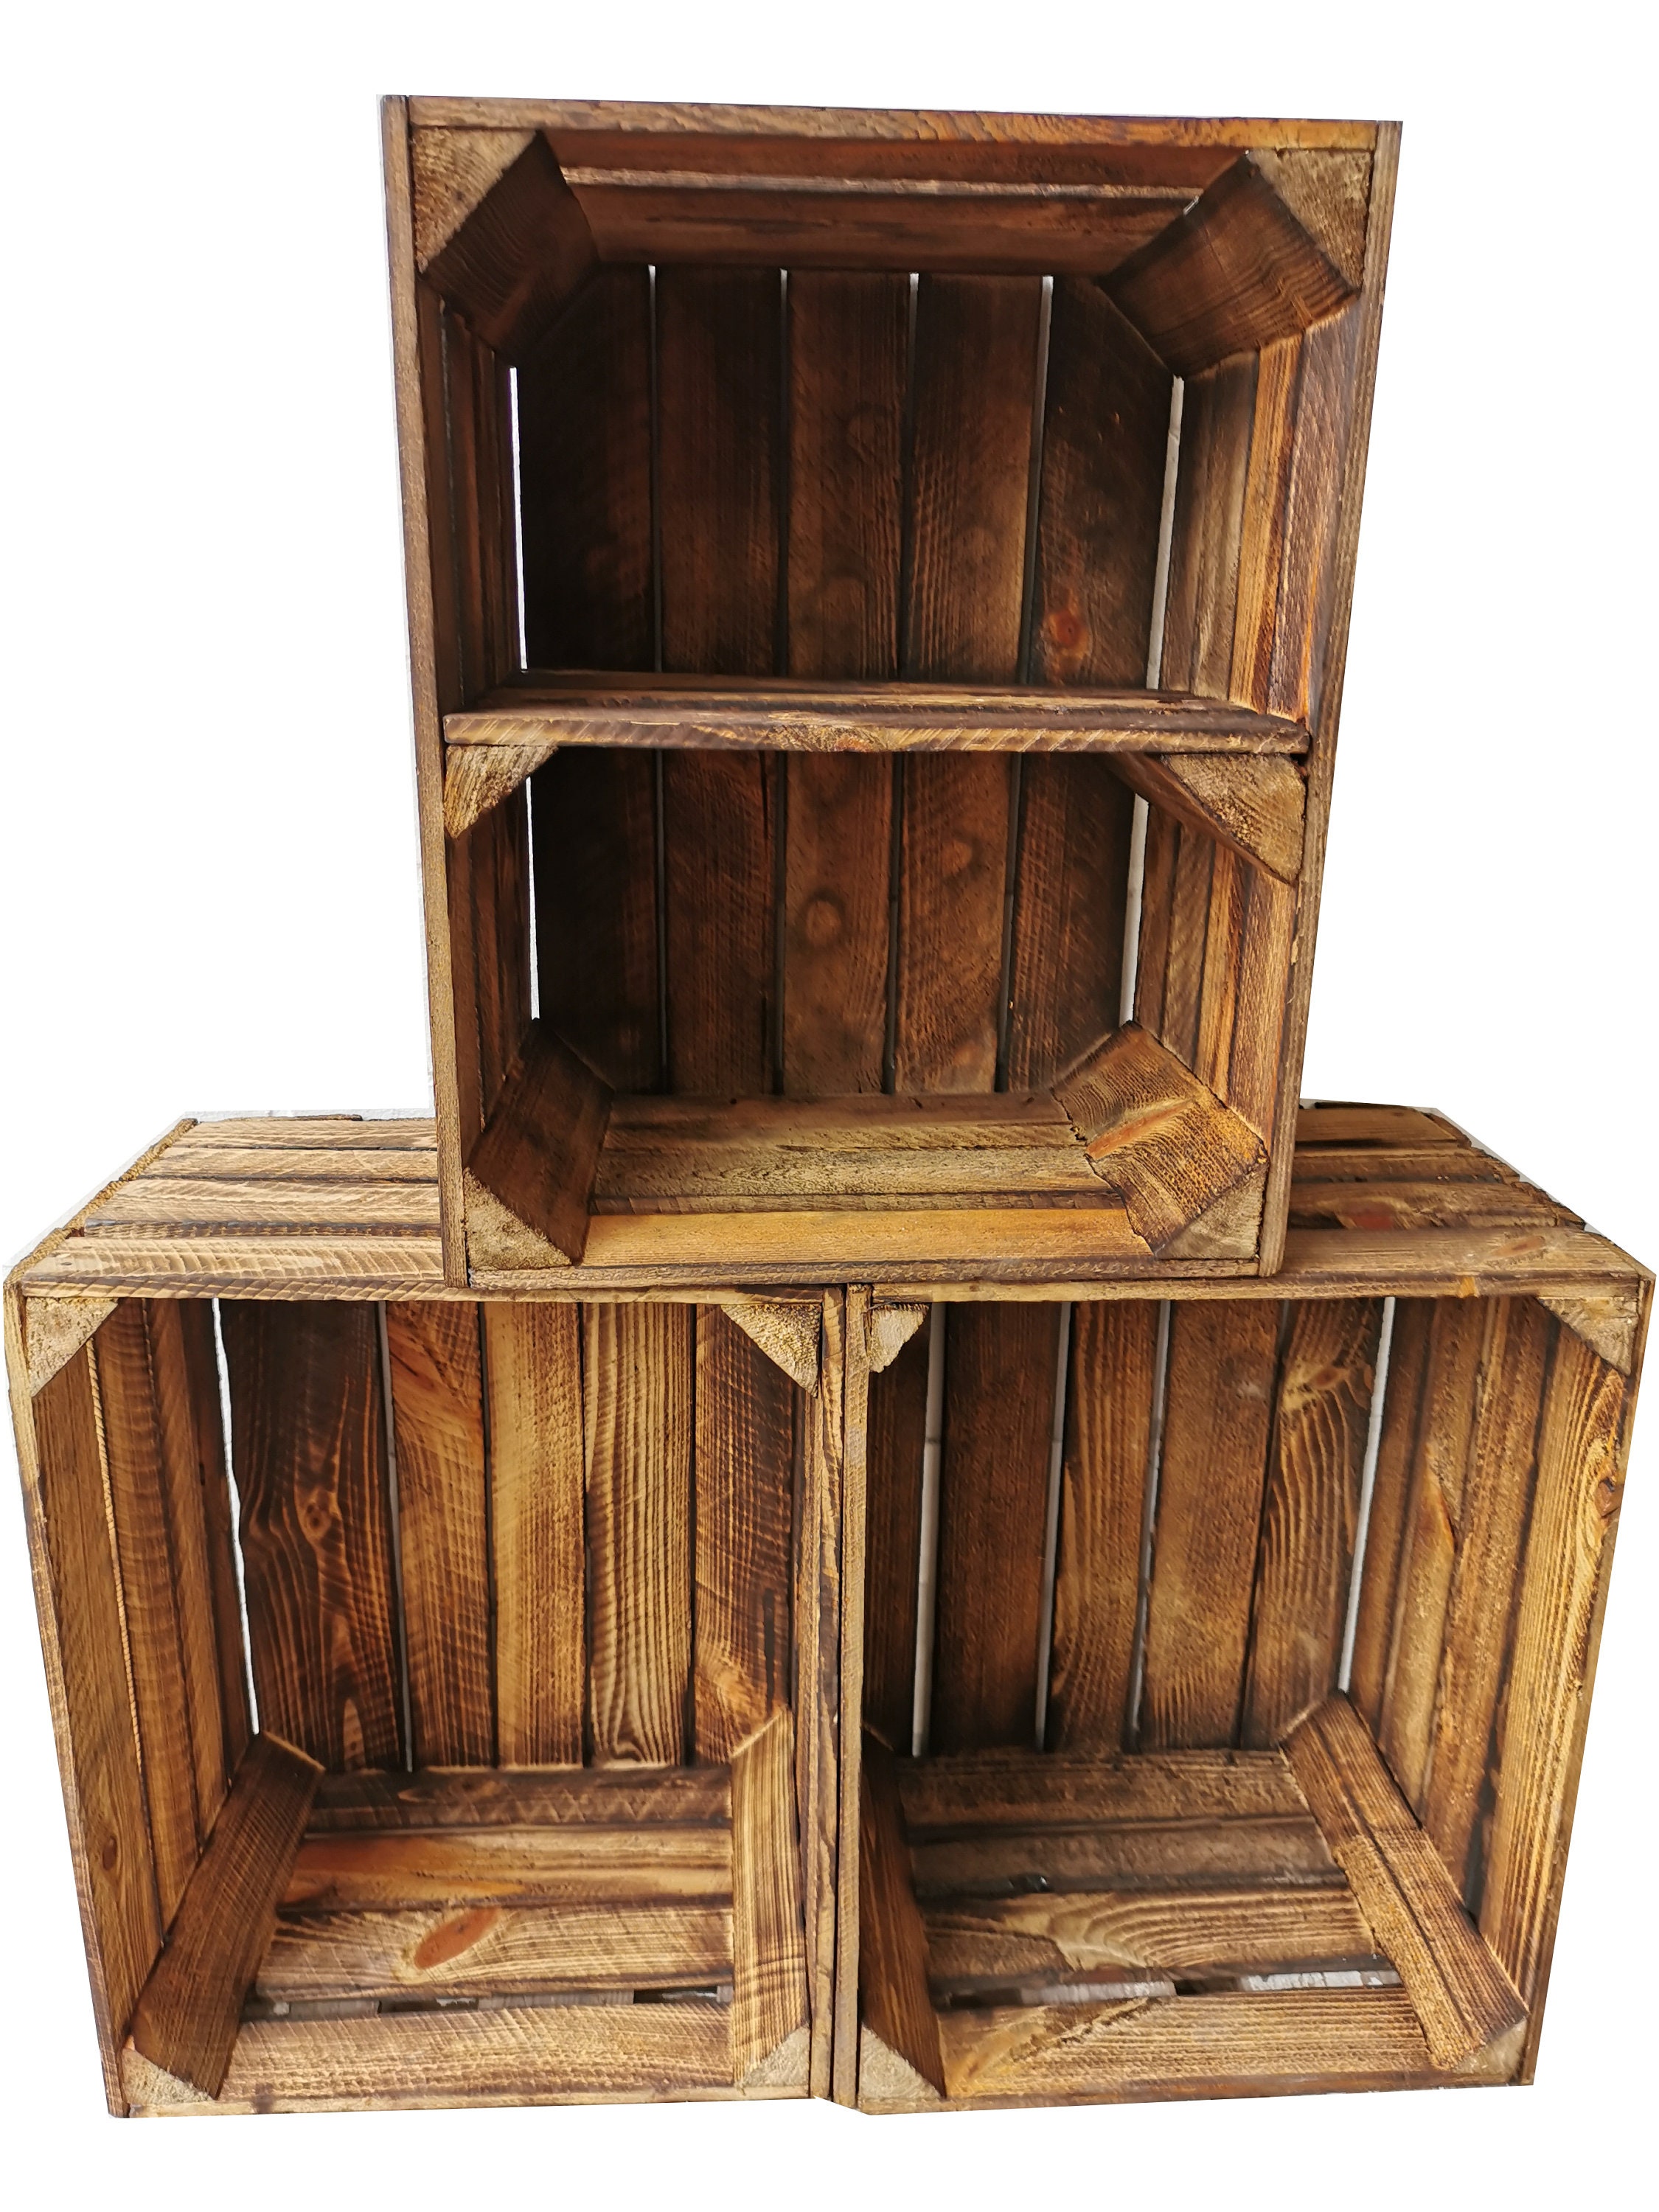 Cajas de madera flameadas en práctico juego de 3 unidades, 50 x 40 x 30 cm:  cajas de fruta originales y vintage, cajas de manzanas de la antigua